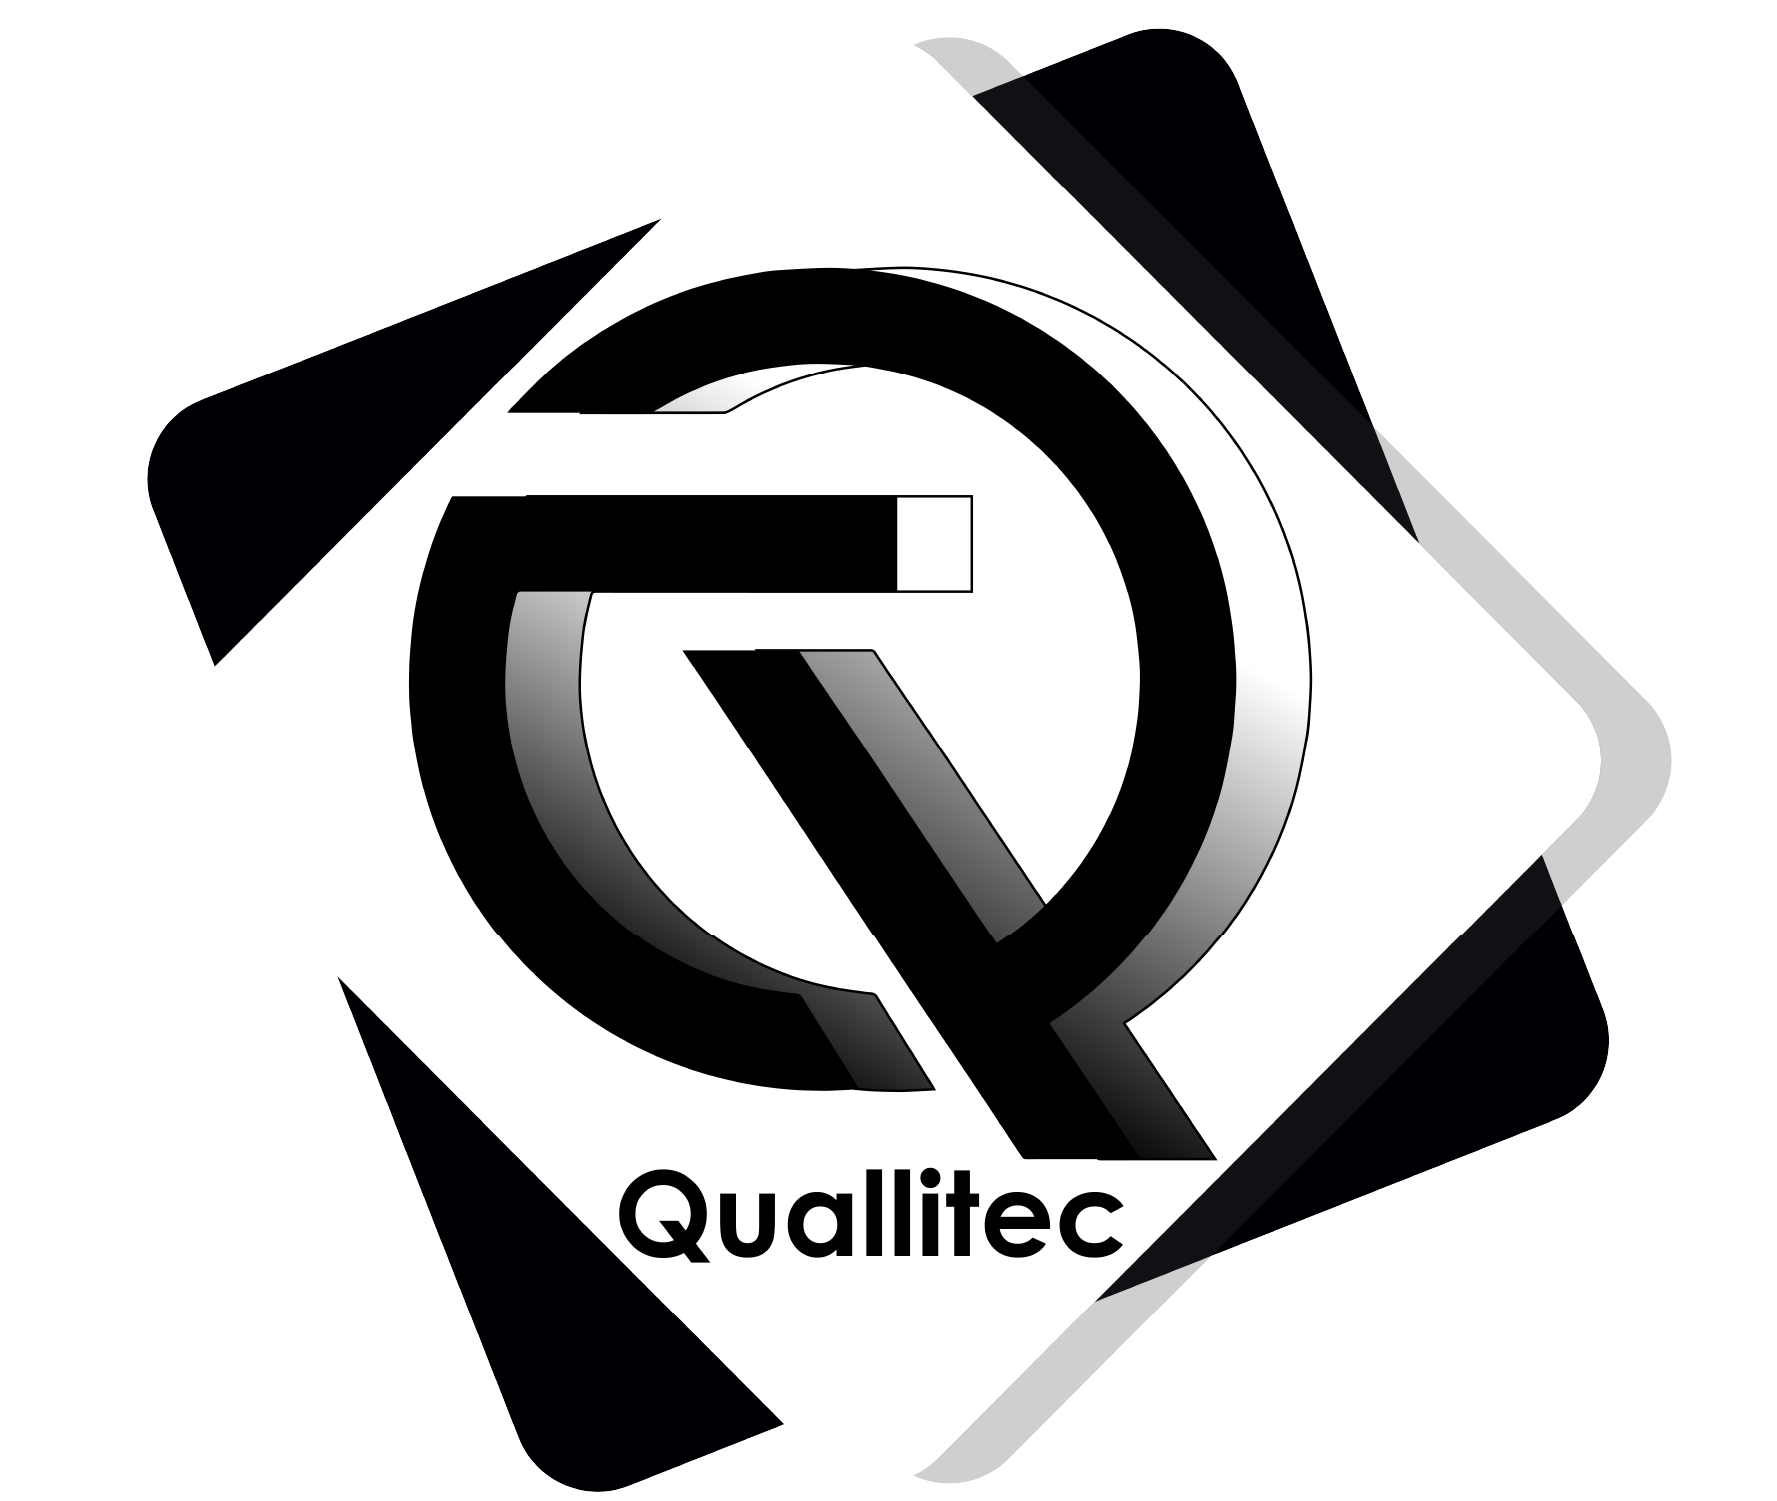 Quallitec_logo_site_vik